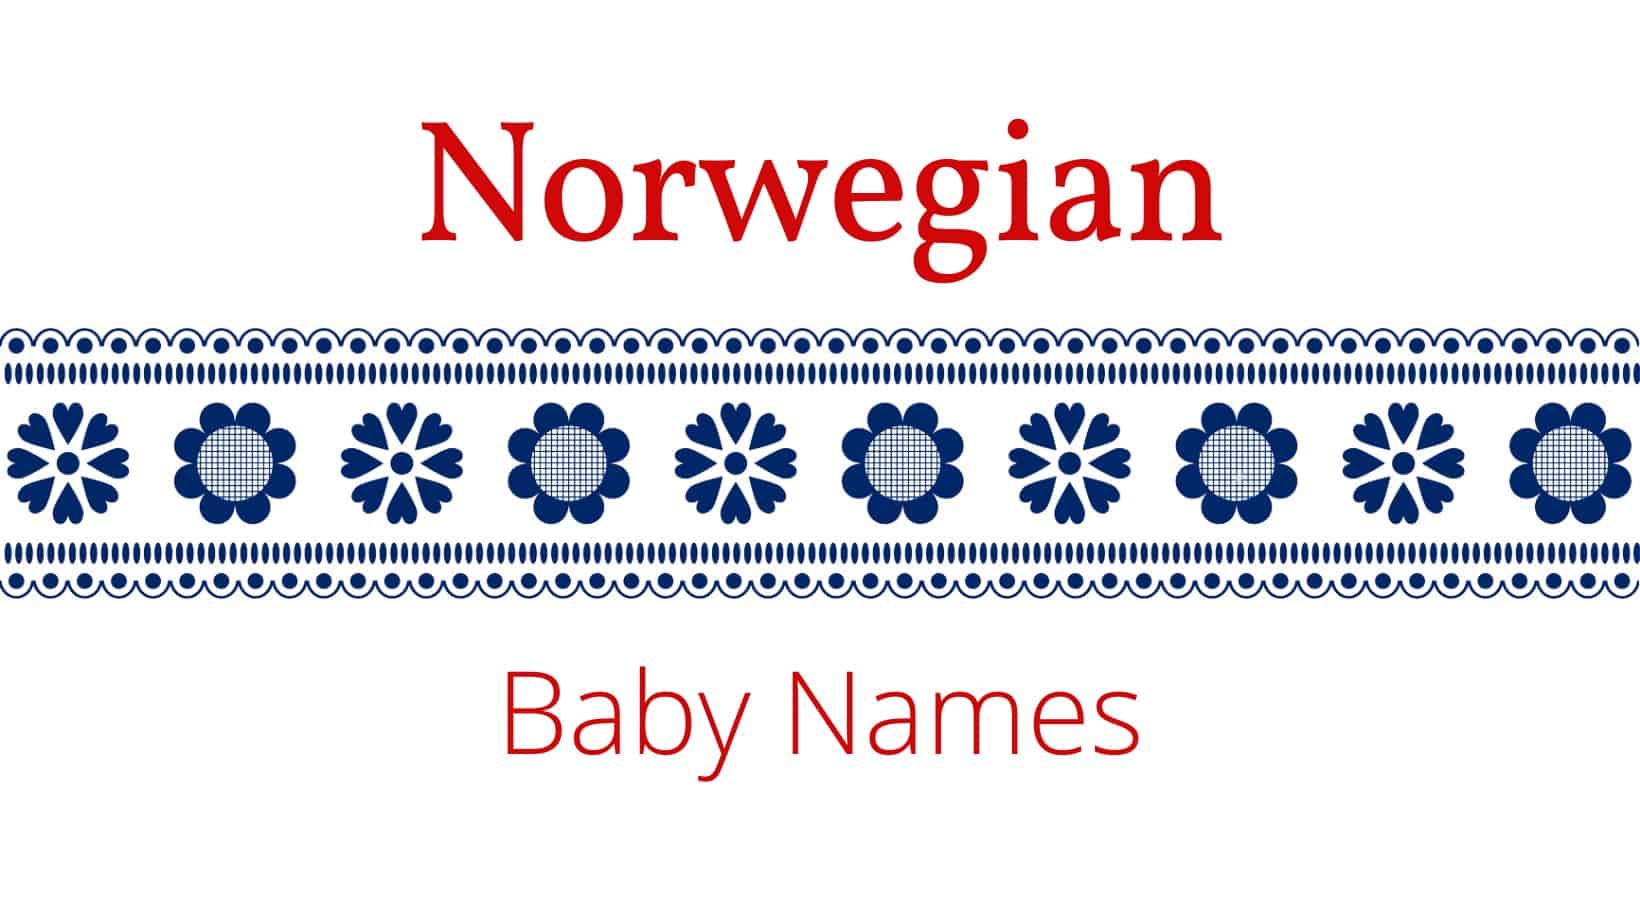 Norwegian baby names